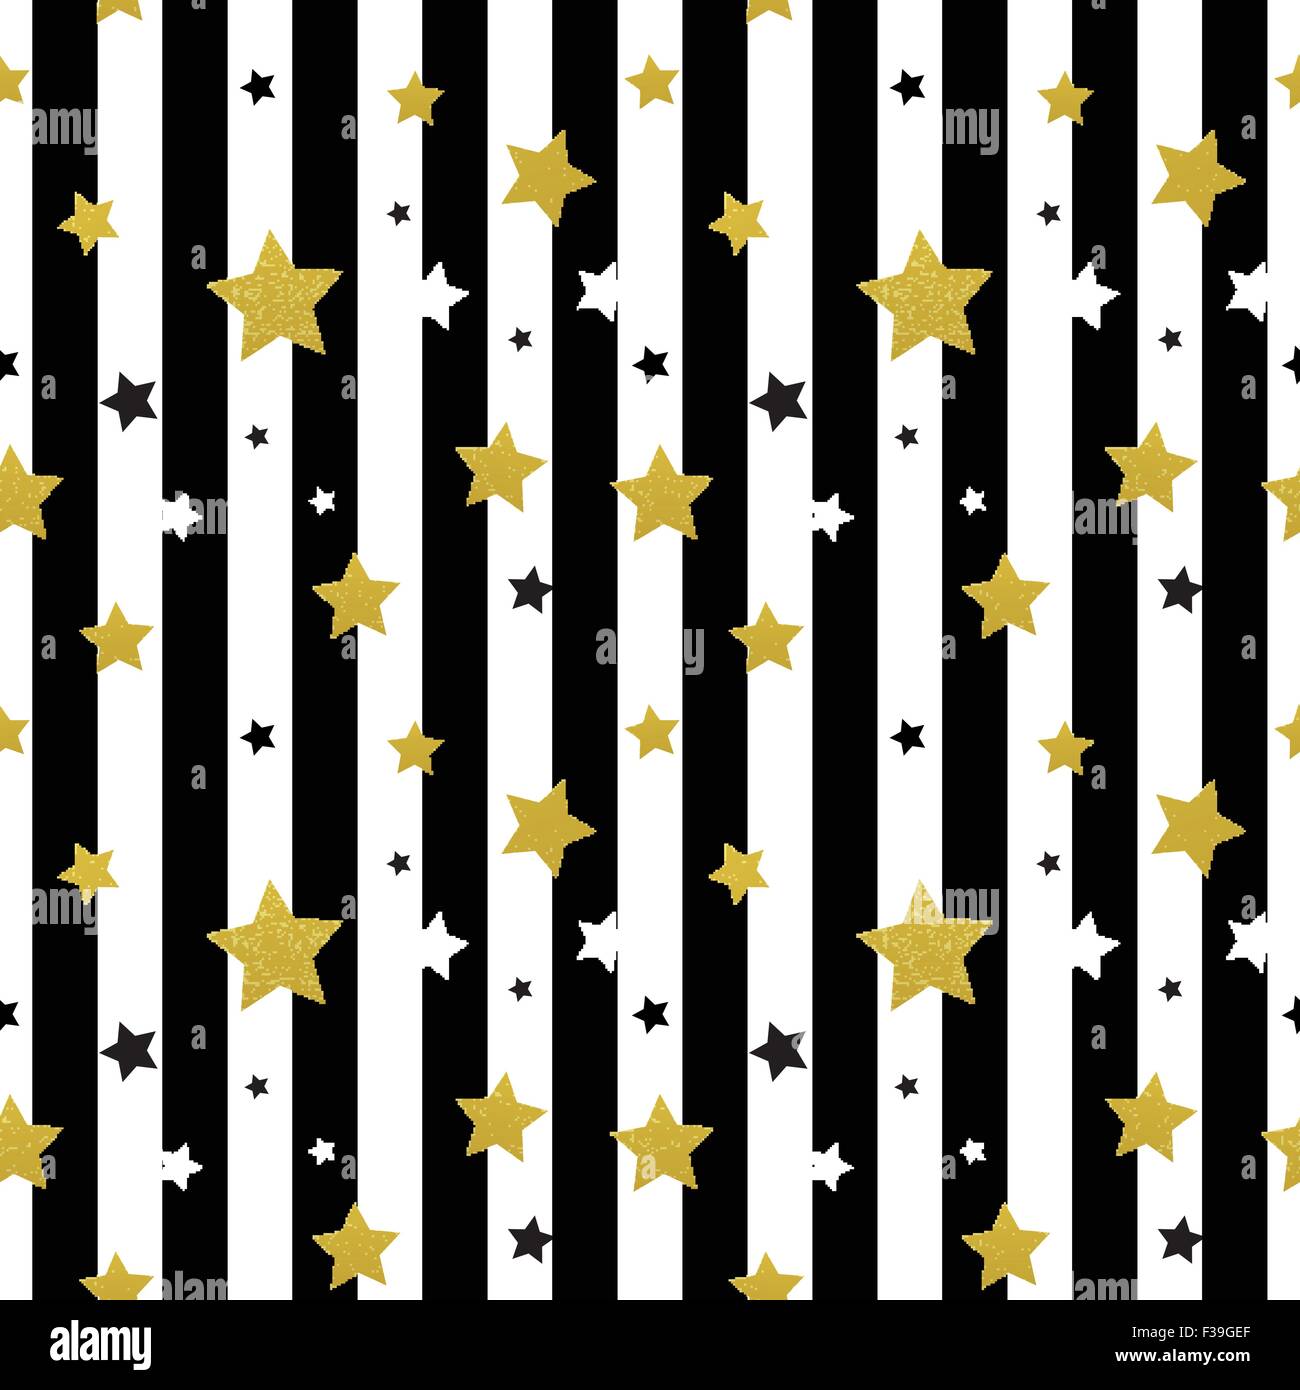 Schwarz, weiß und Gold Sterne seamless pattern. Vektor-illustration Stock Vektor